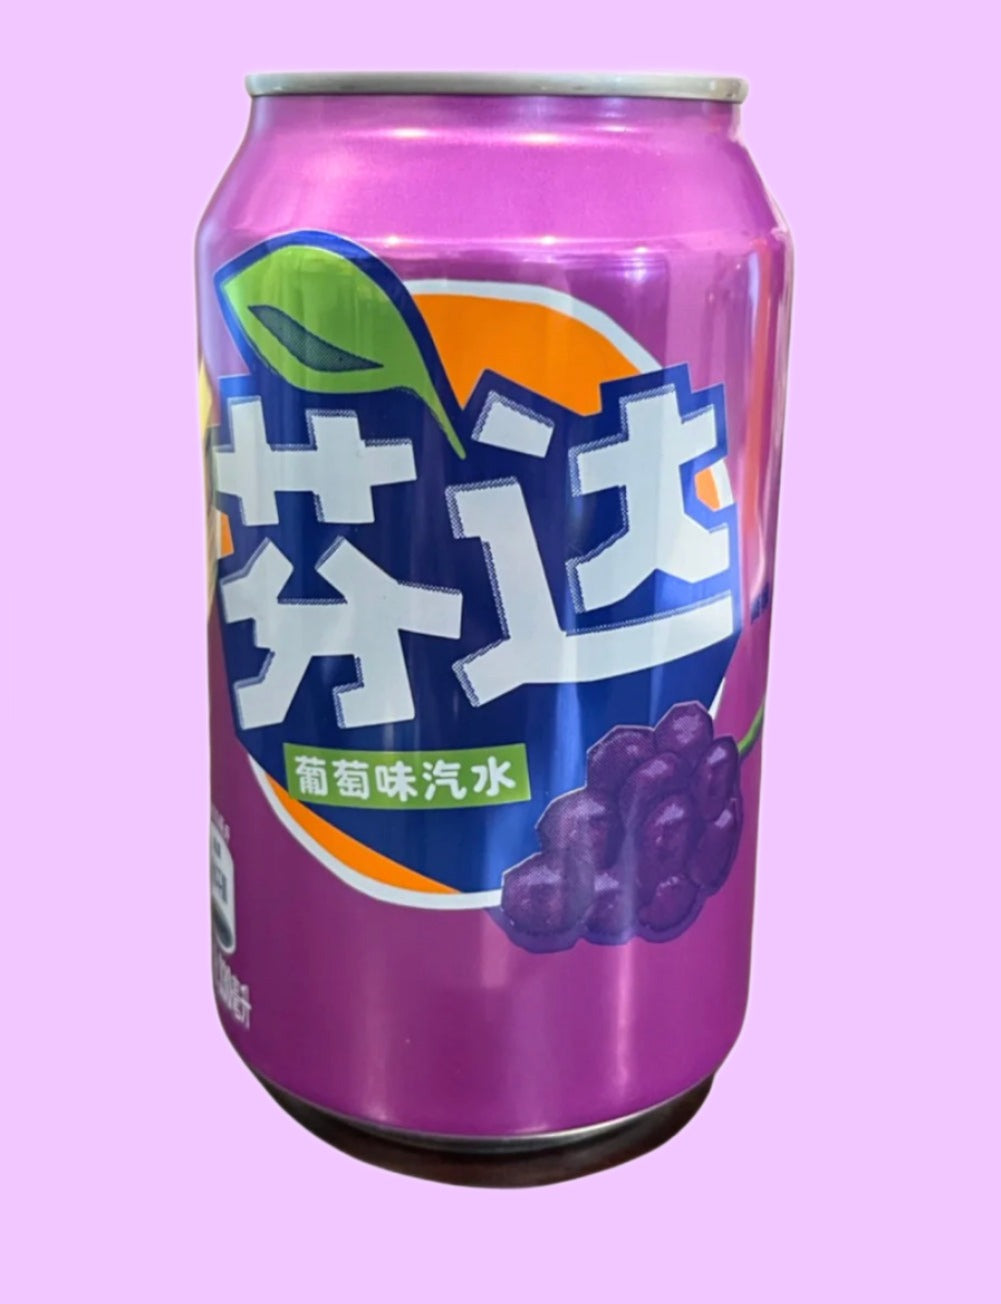 Fanta - Grape Can (China)